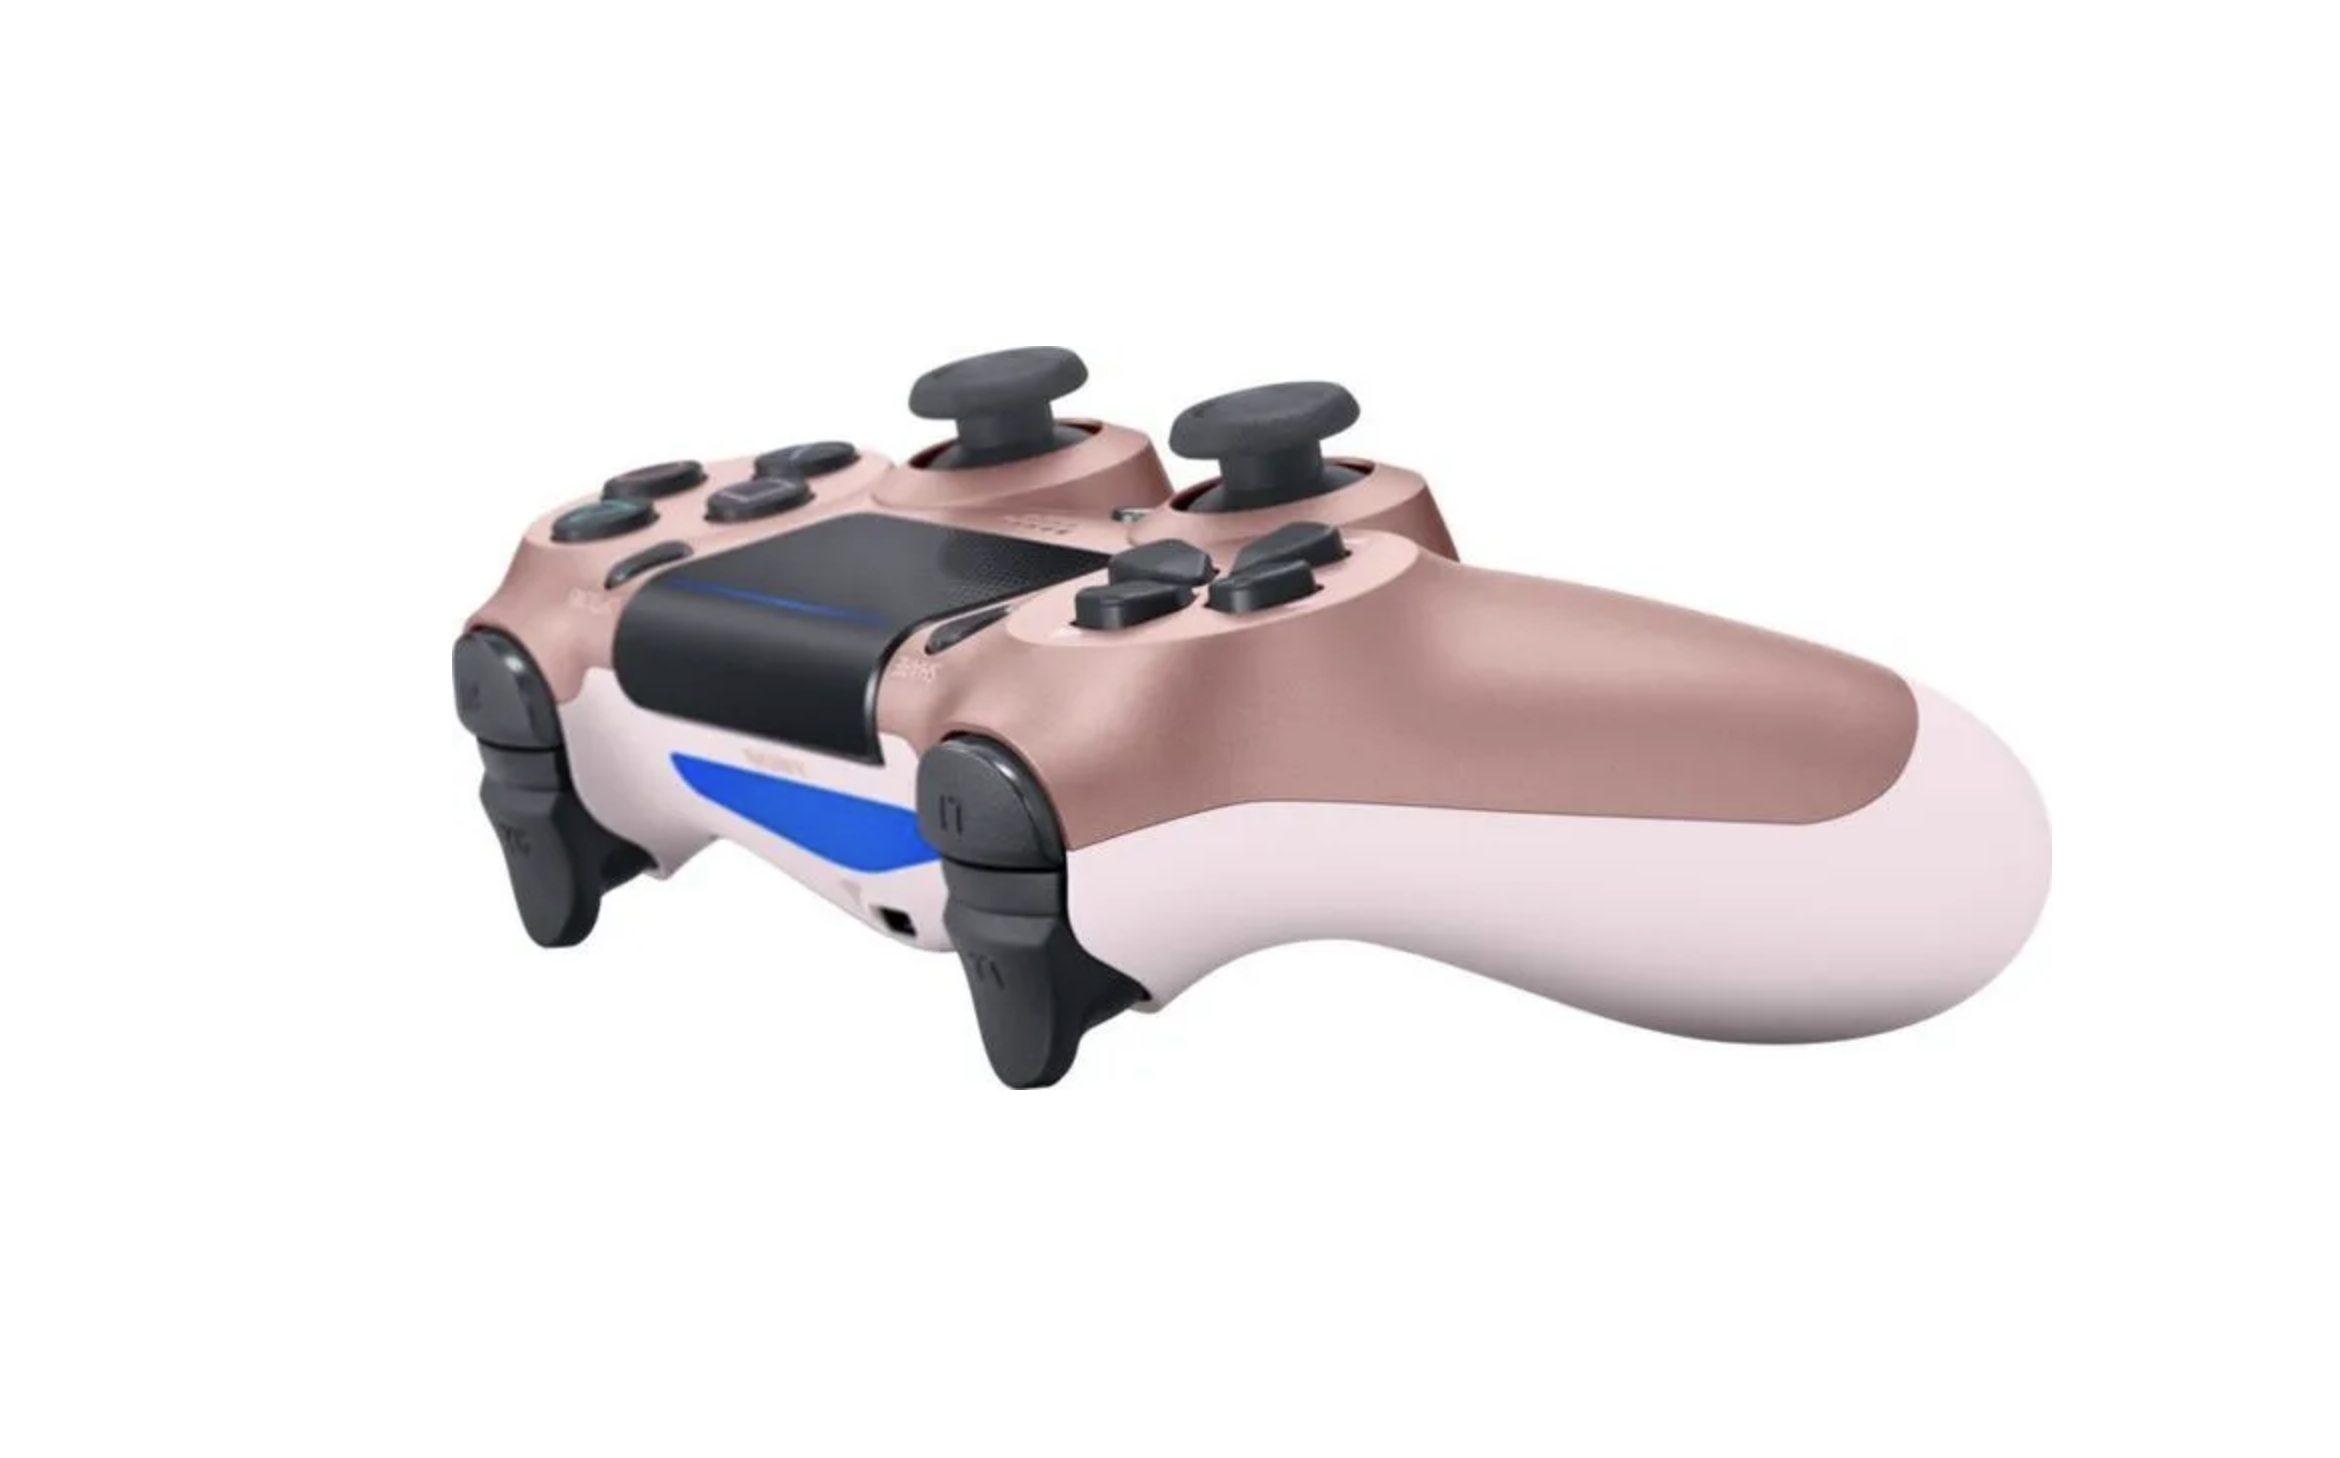 Геймпад для PlayStation 4 беспроводной джойстик DualShock 4 / для PS4 (Розовый) (OEM)